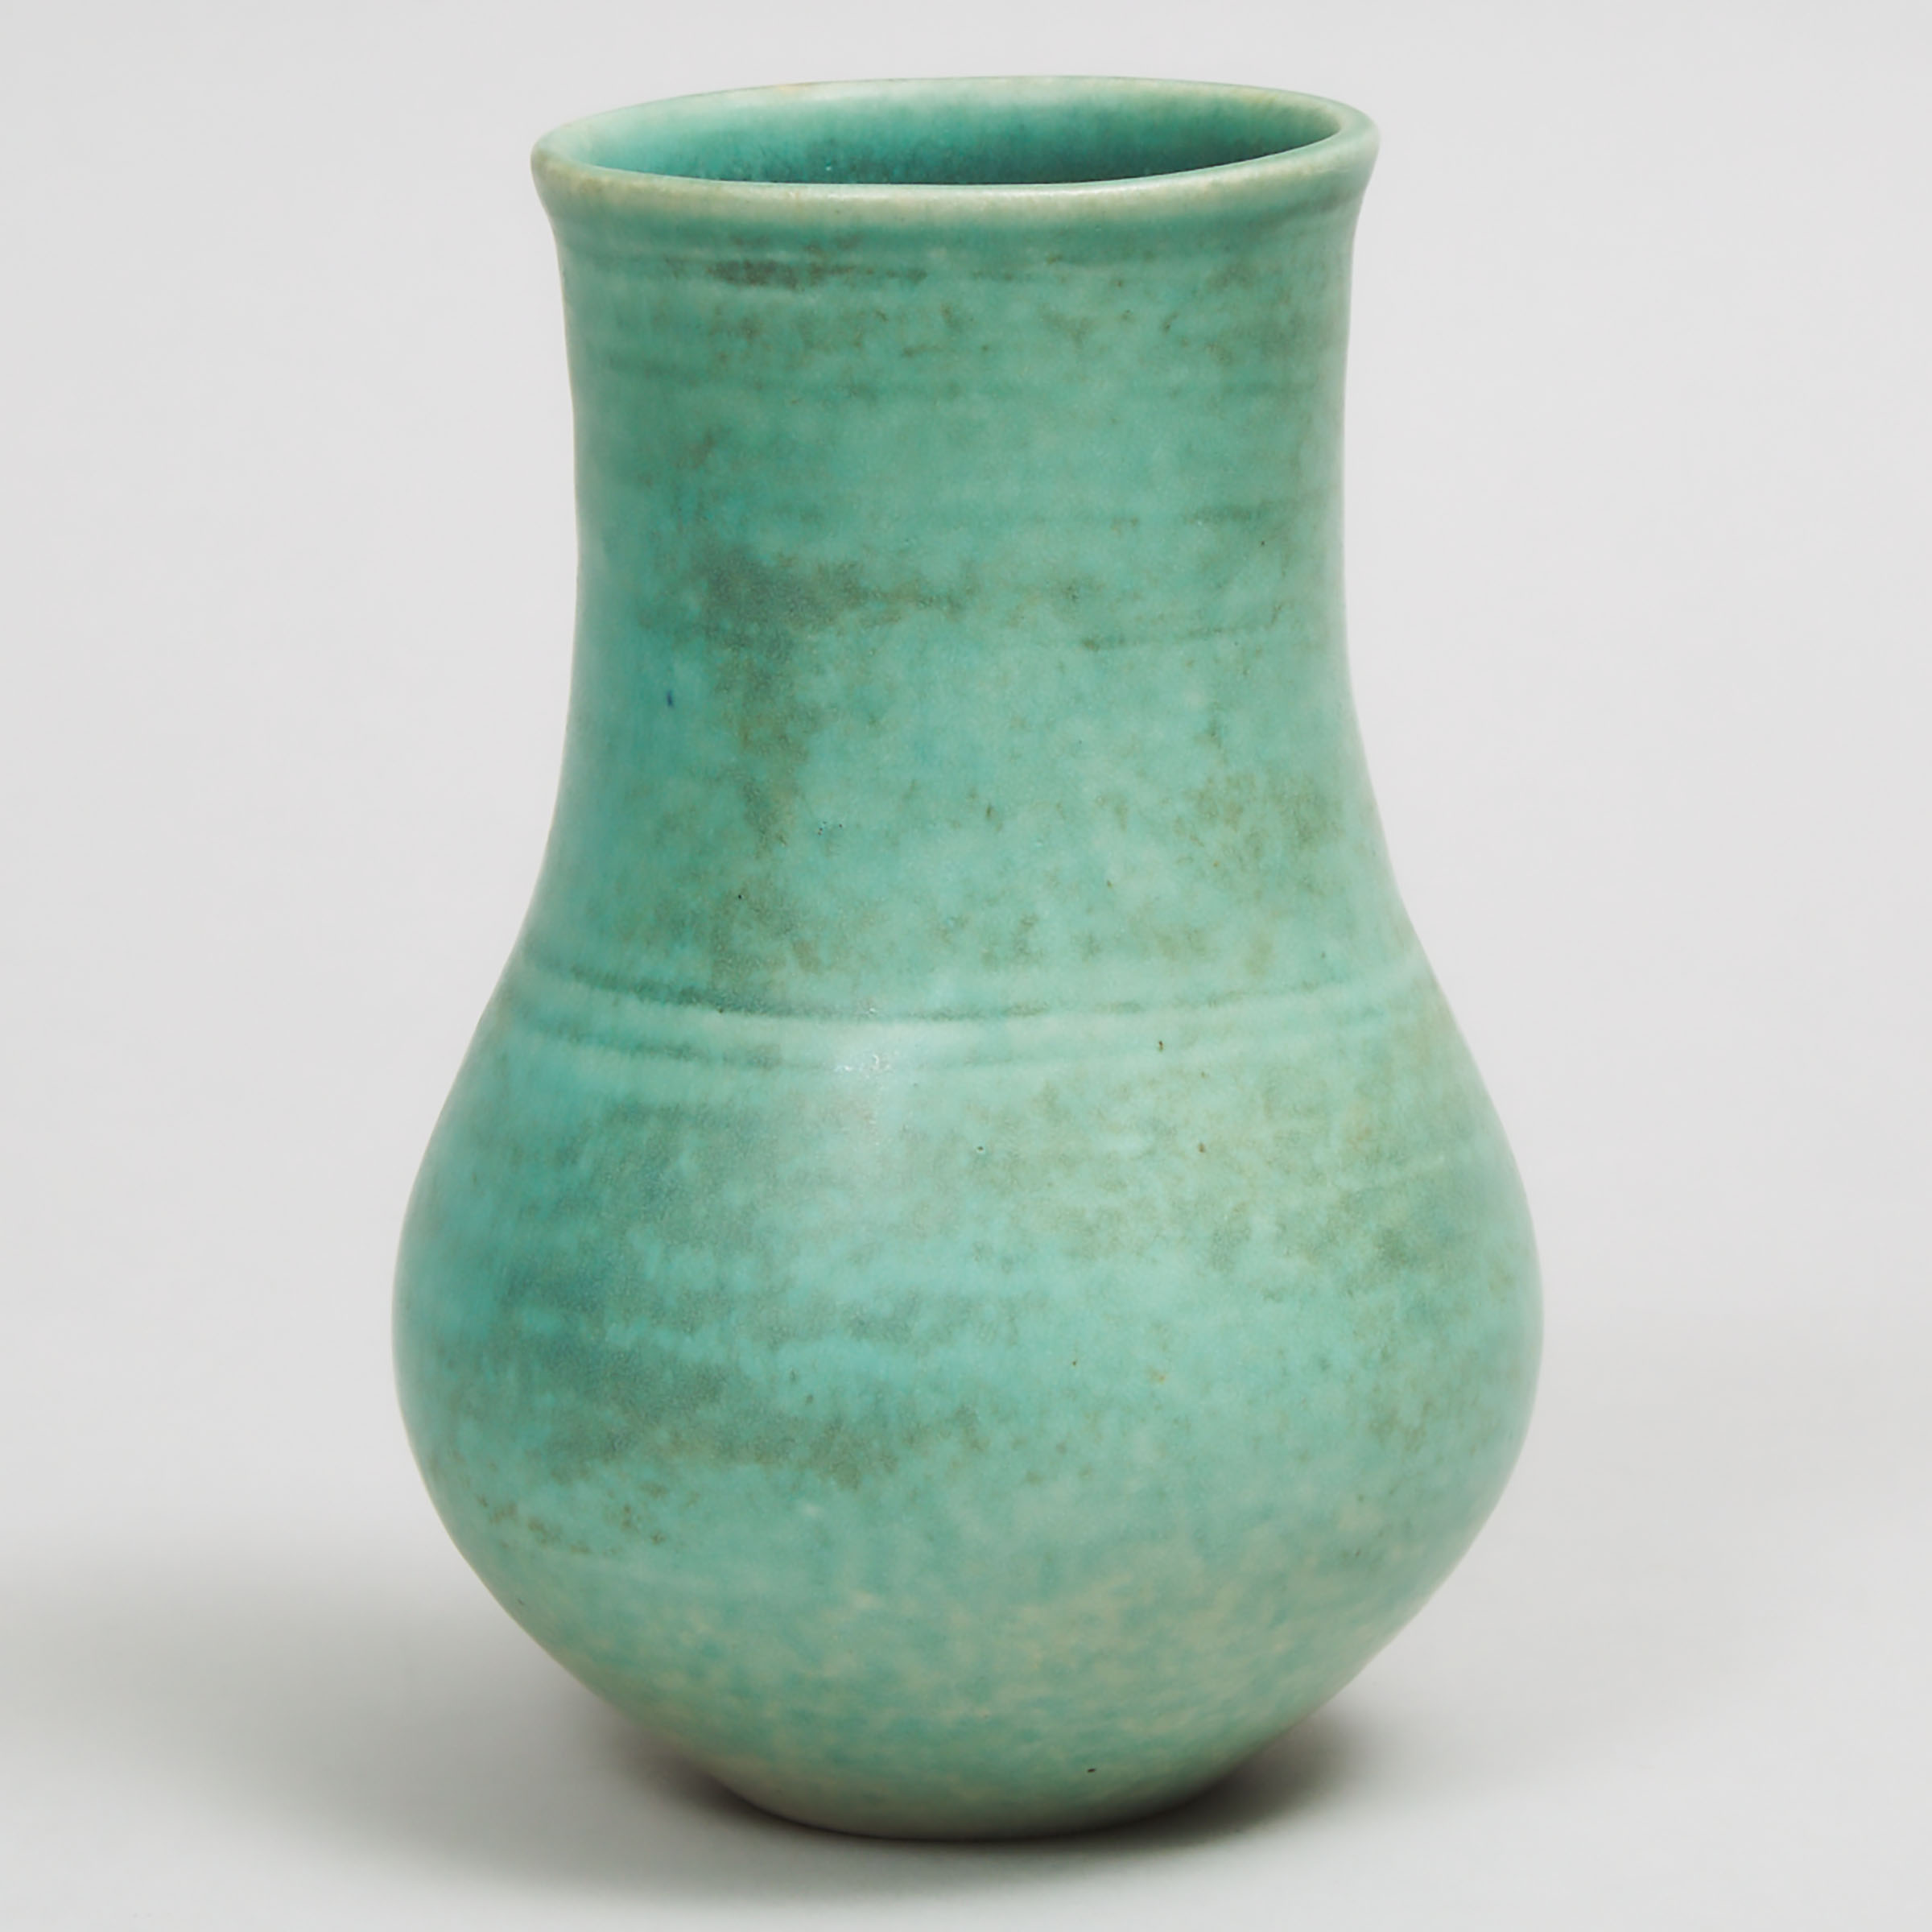 Deichmann Green Glazed Stoneware Vase, Kjeld & Erica Deichmann, mid-20th century